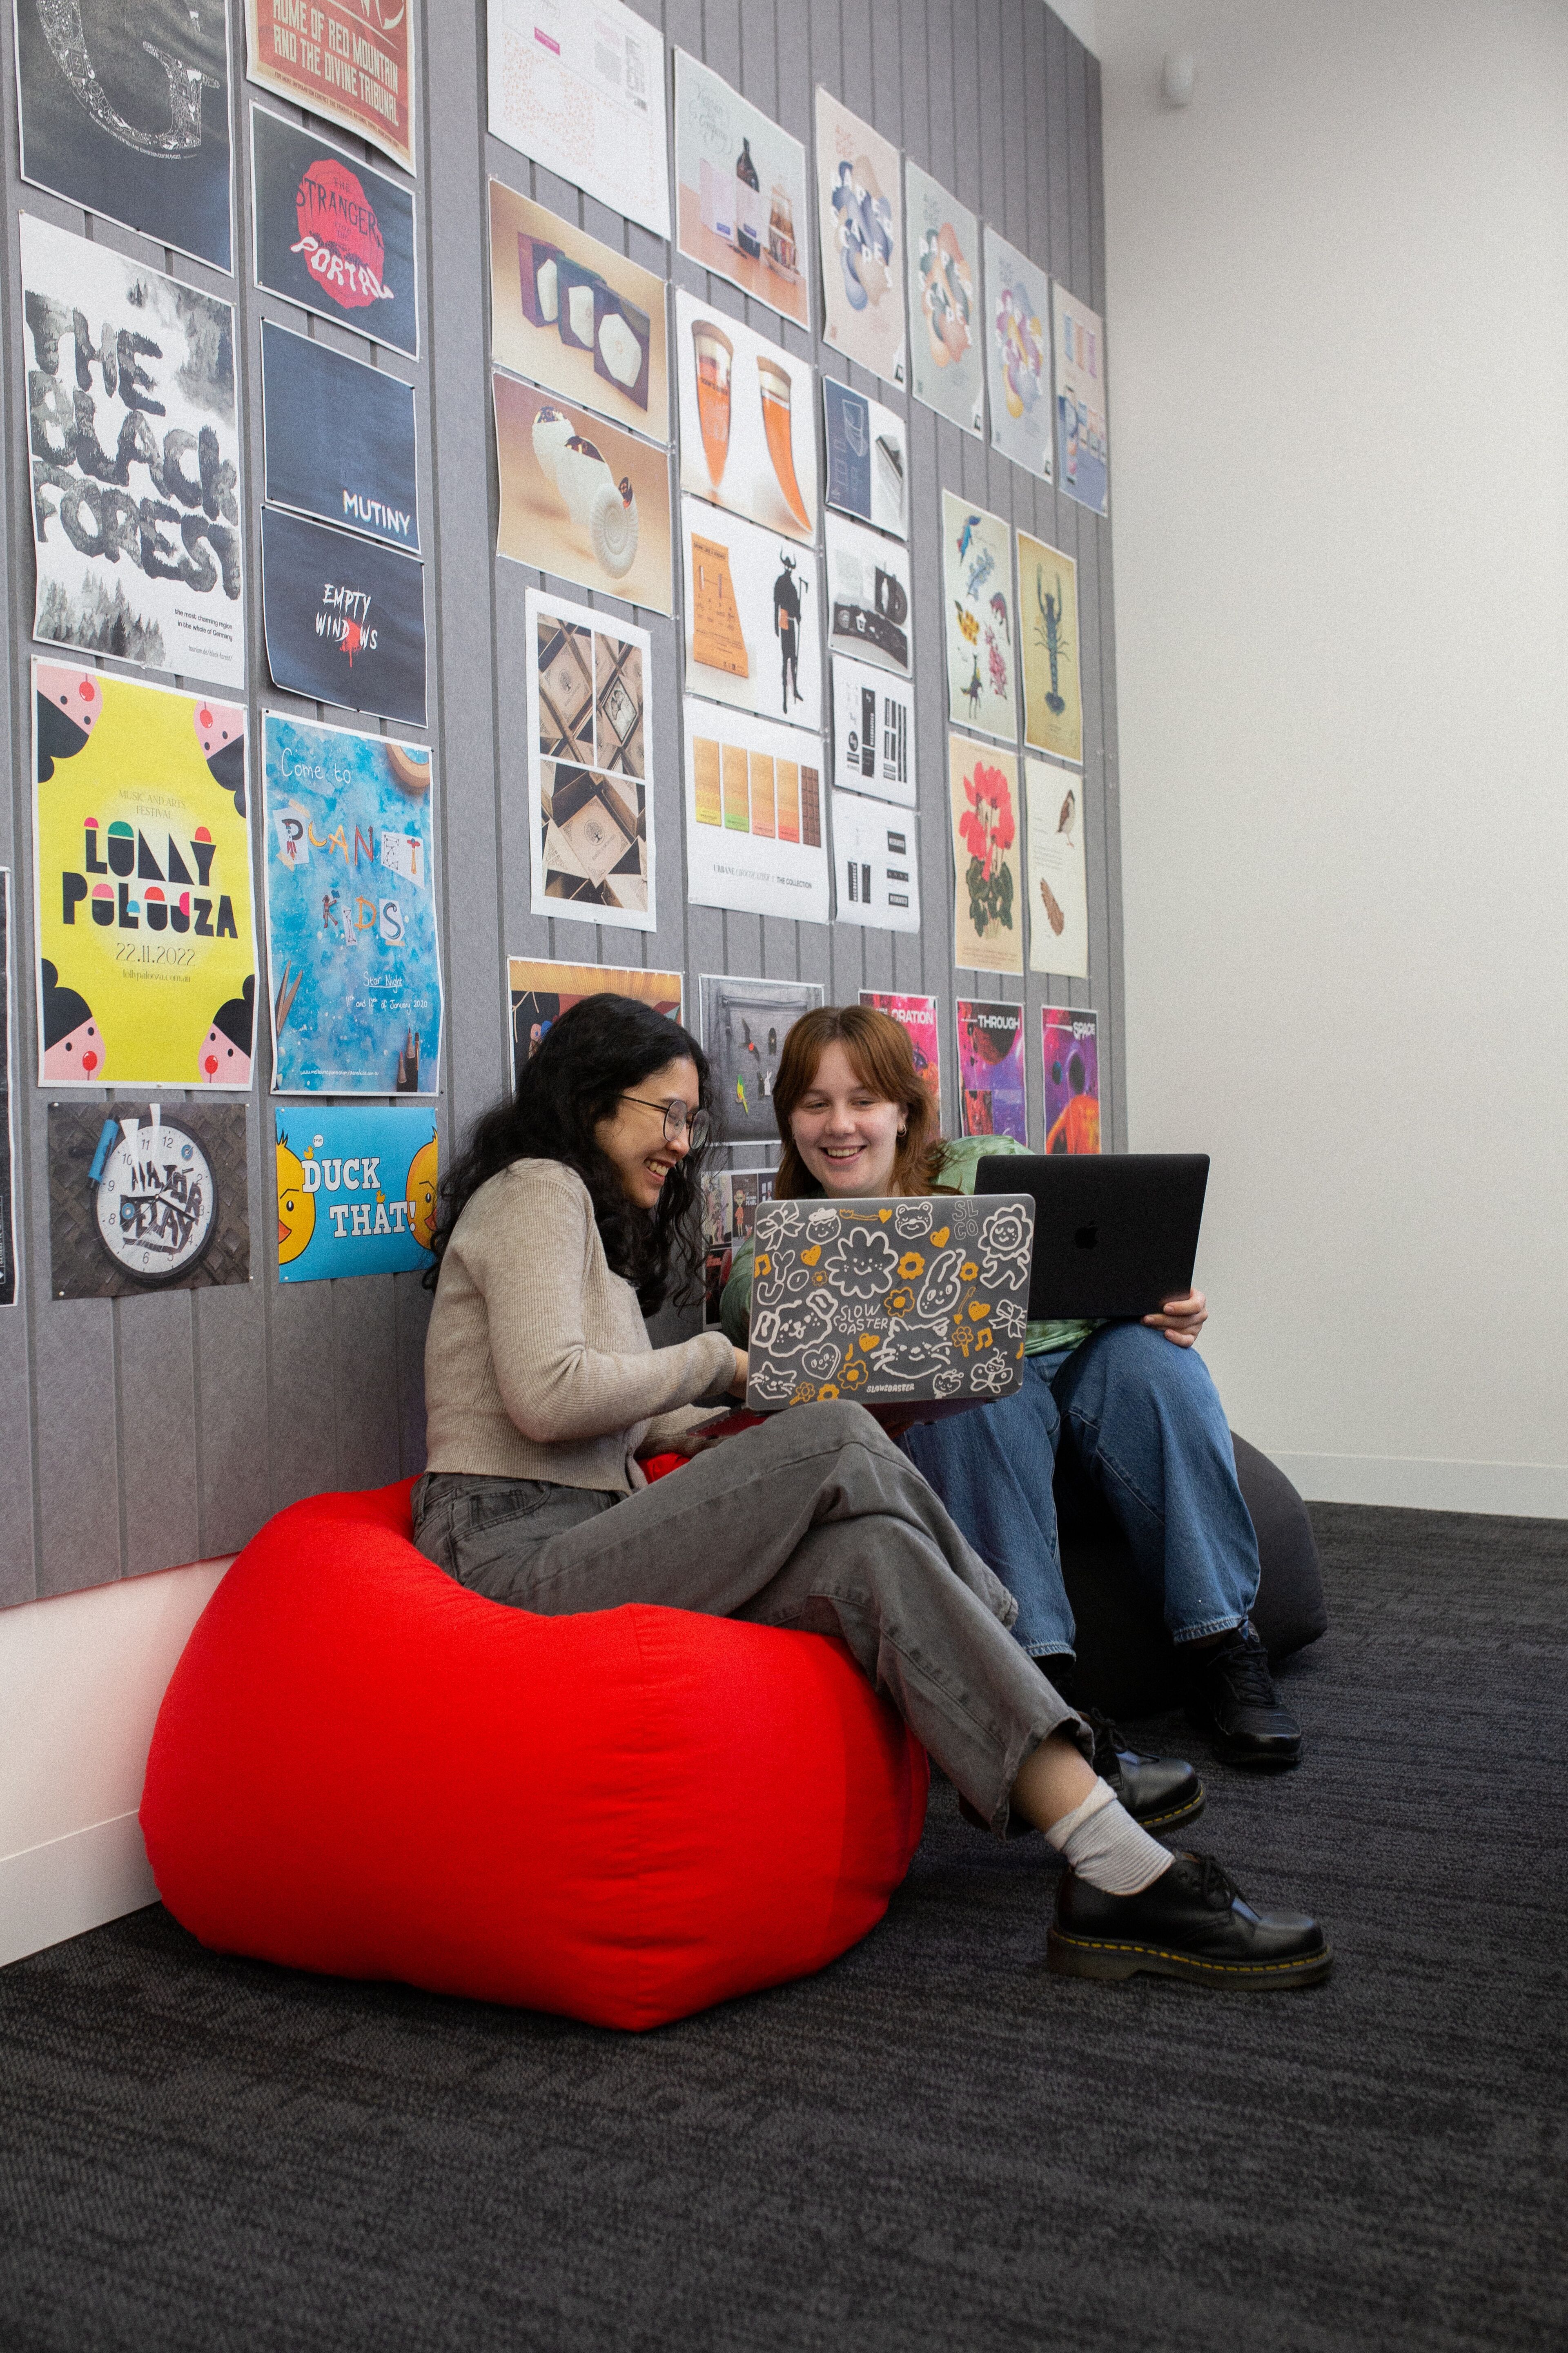 Dos estudiantes se ríen y comparten ideas en un puf rojo en un salón universitario vibrante.